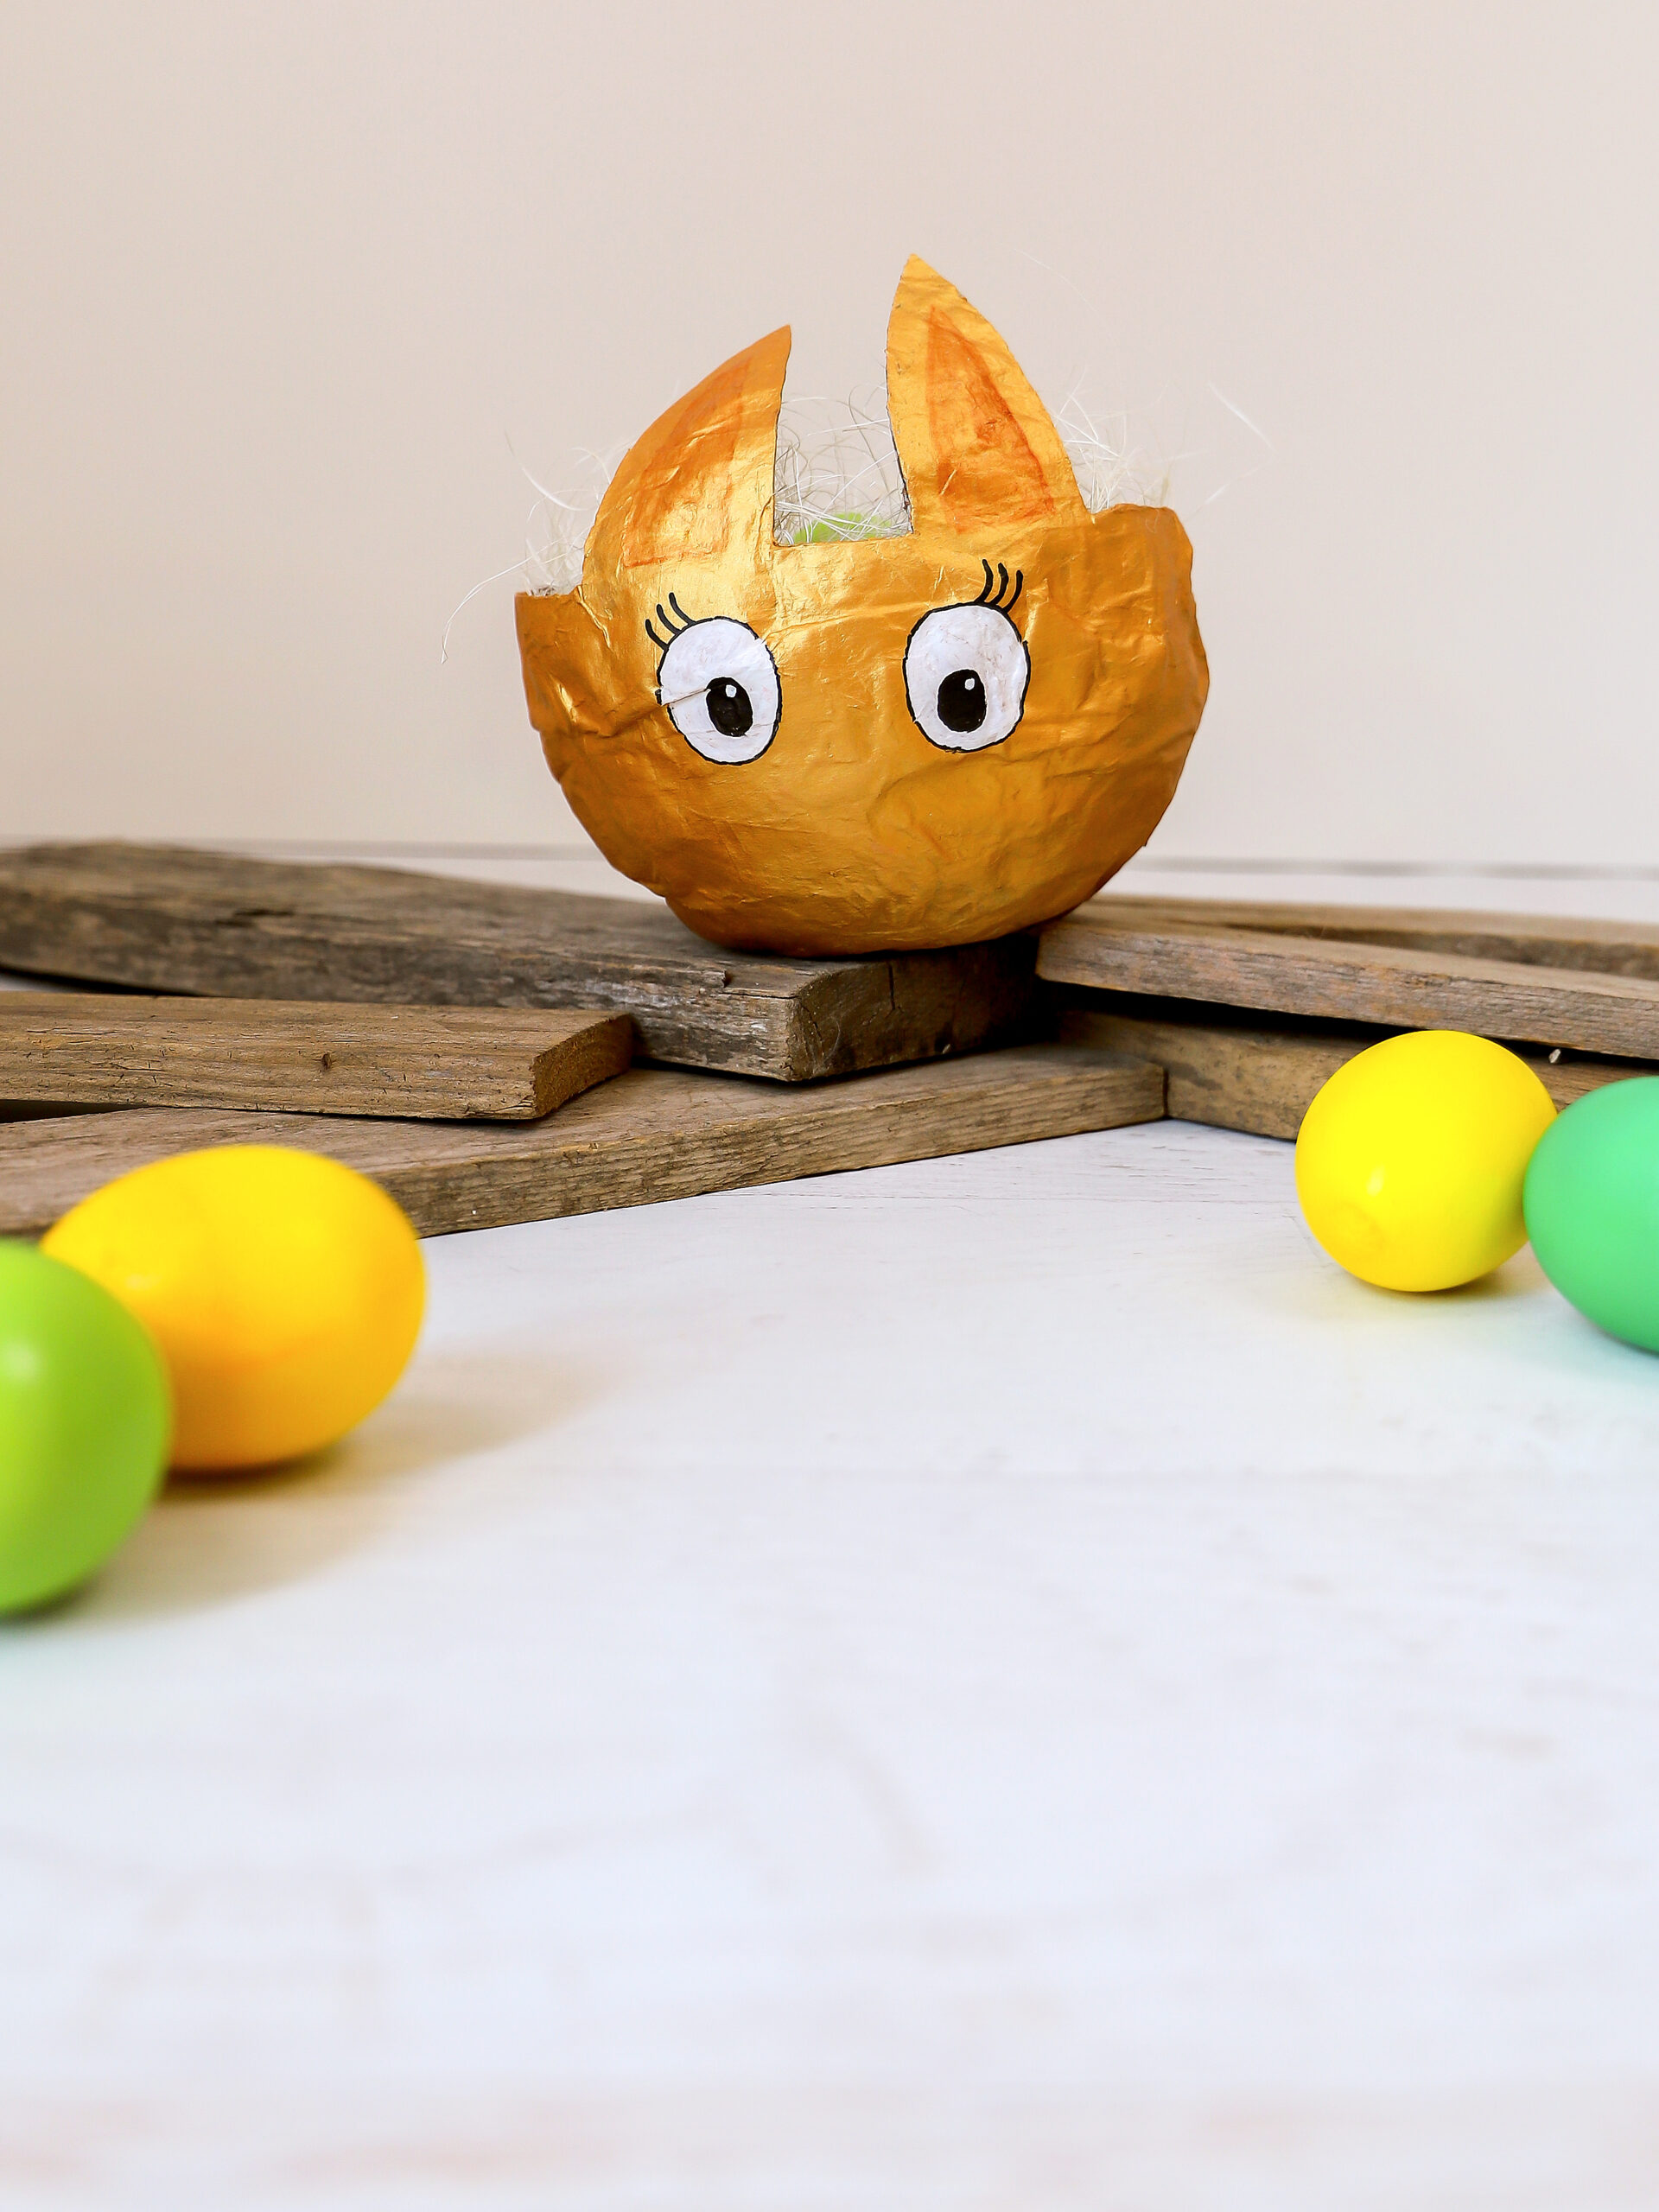 Hasen - Osterkorb mit Pappmaché kleistern | #bastelnmitkindern | von Fantasiewerk